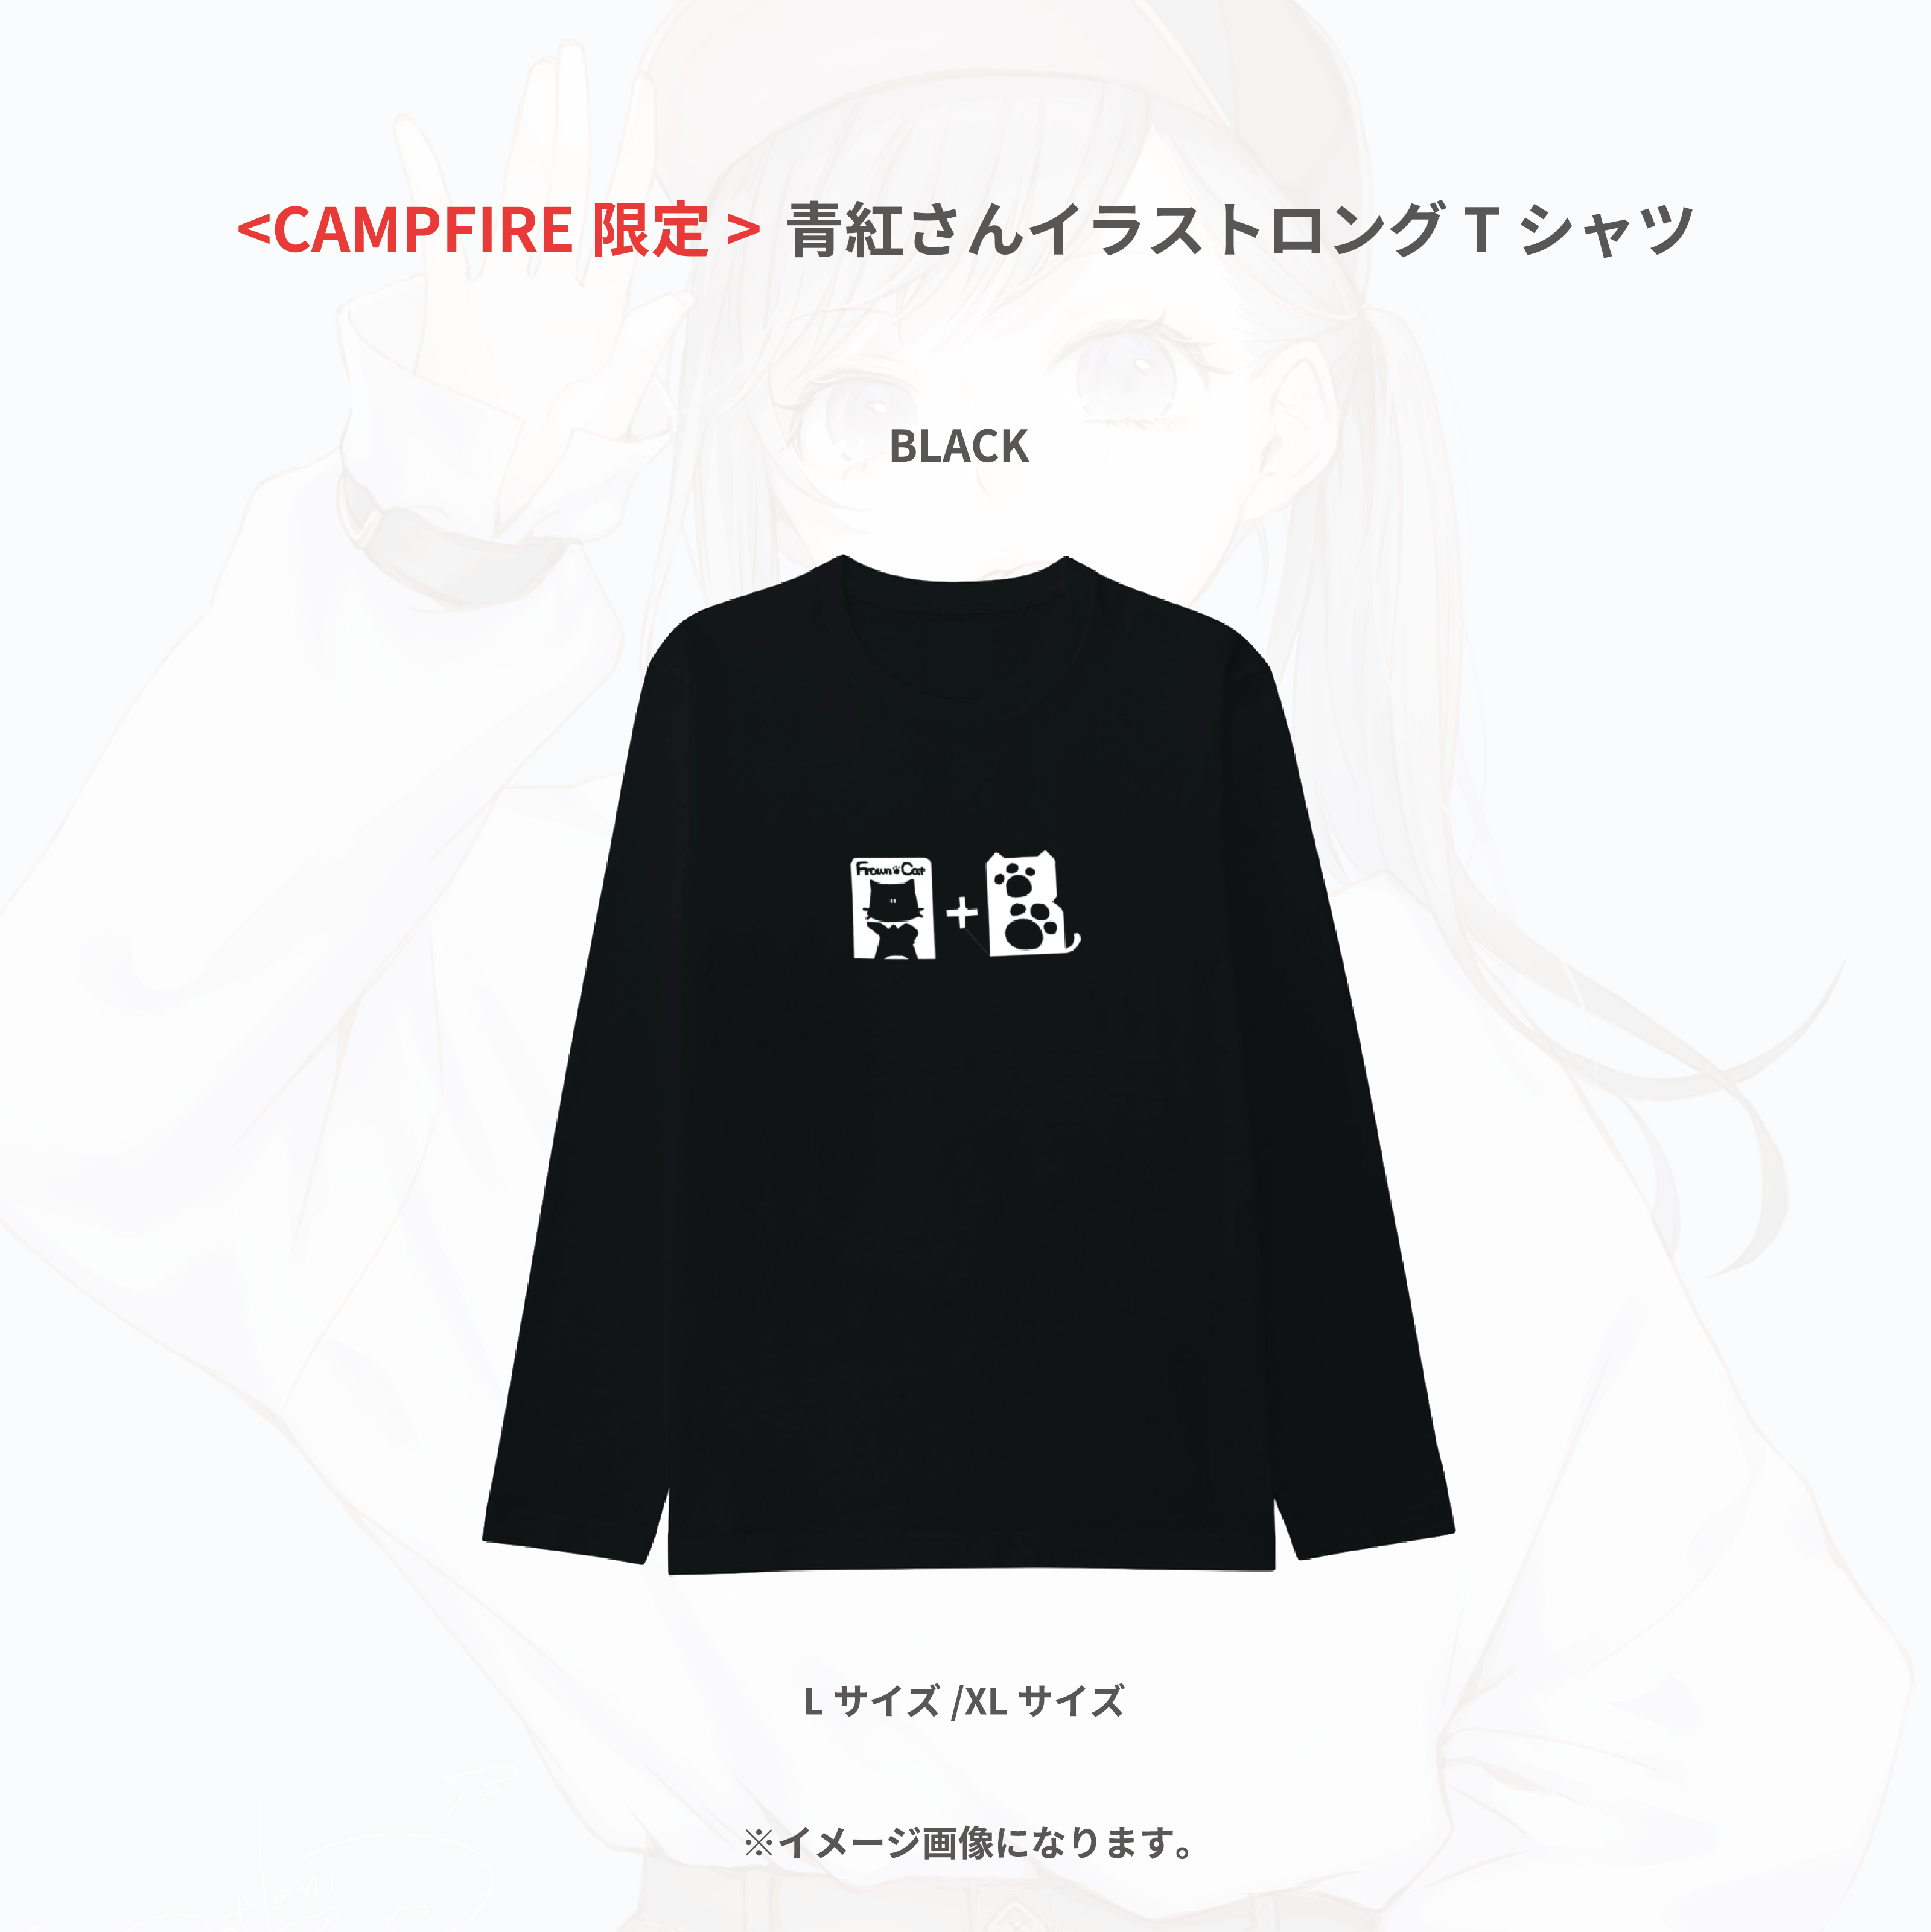 青紅さんデザイン ファッションブランド 作成プロジェクト Campfire キャンプファイヤー